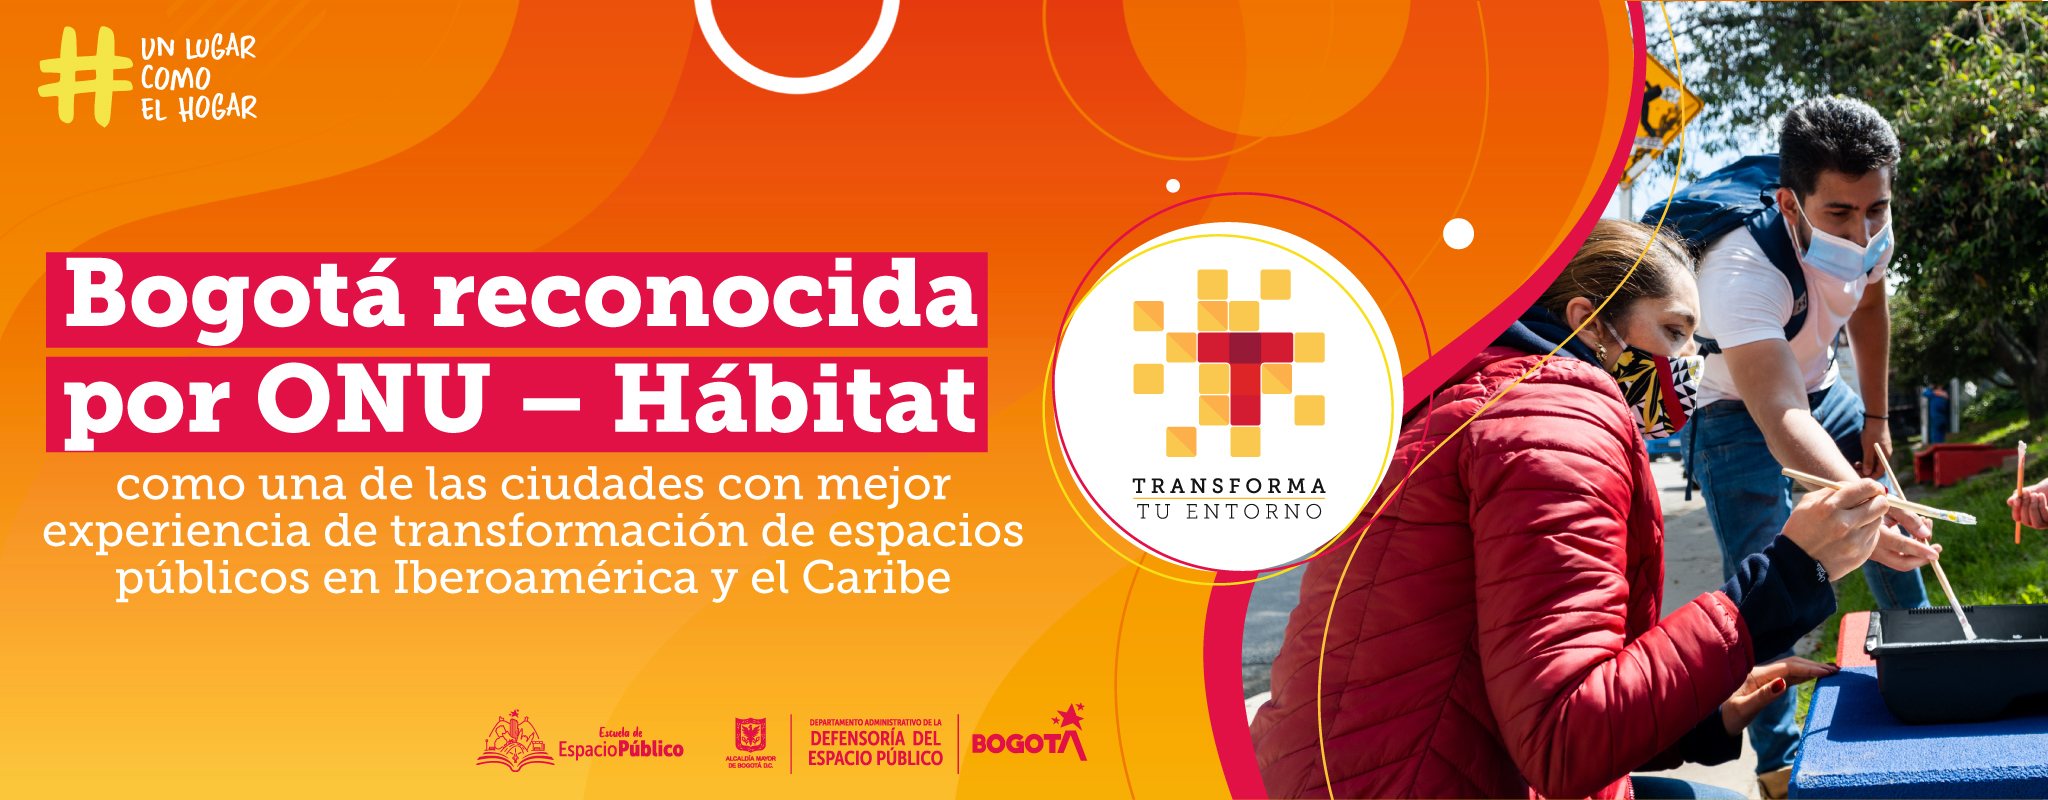 Bogotá reconocida por ONU Hábitat como una de las ciudades con mejor experiencia de transformación de espacios públicos en Iberoamérica y el Caribe